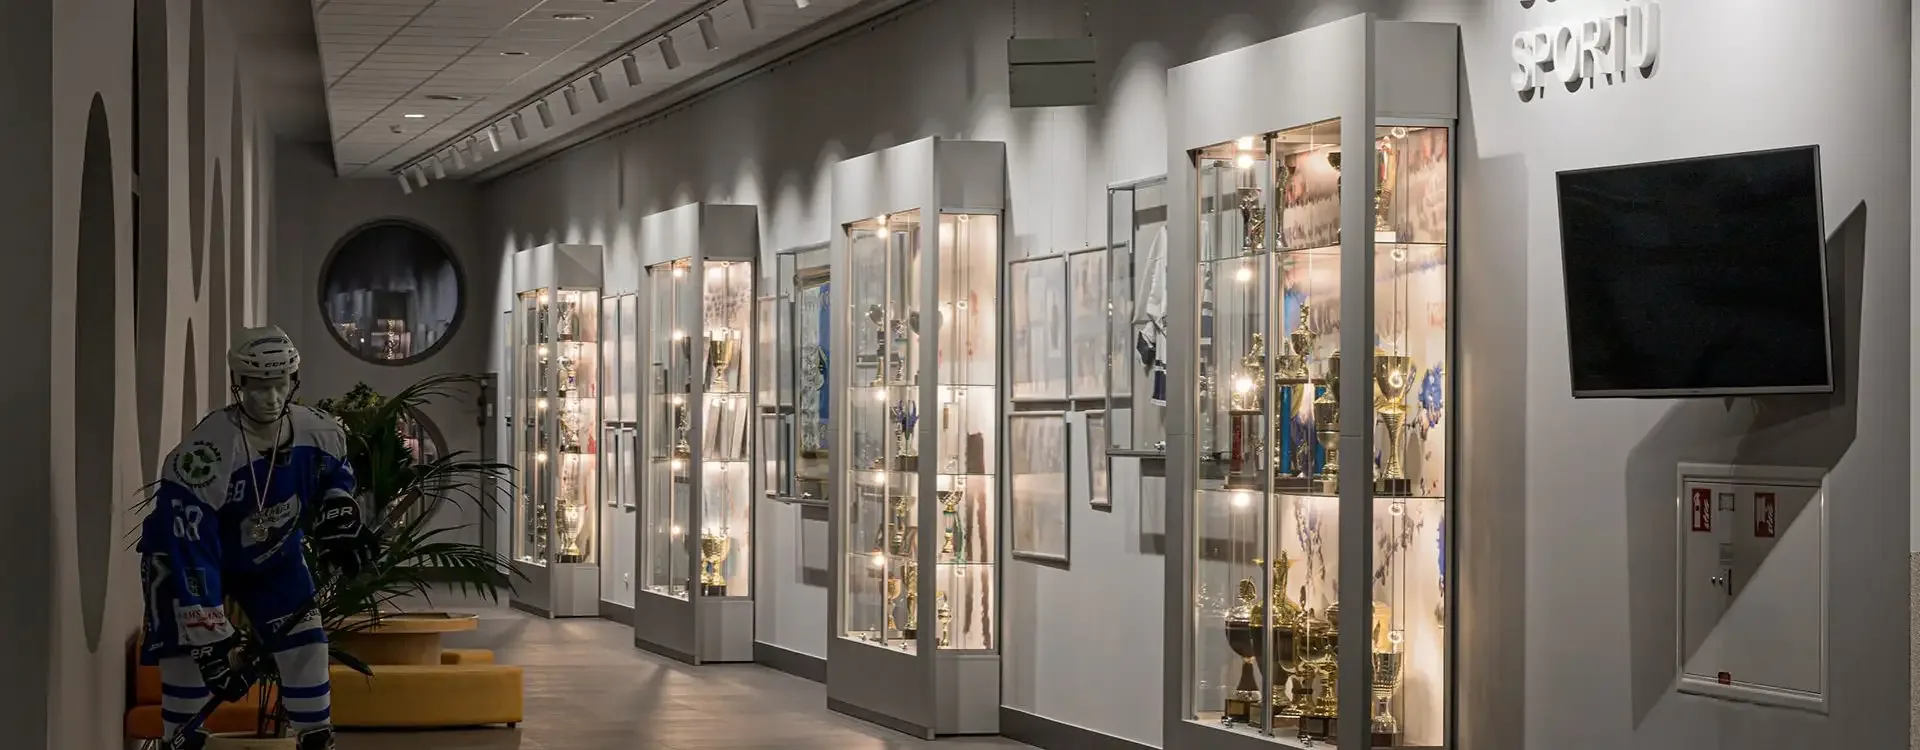 gablota szklana - gabloty wystawiennicze, muzealne, wystawowe, ekspozycyjne